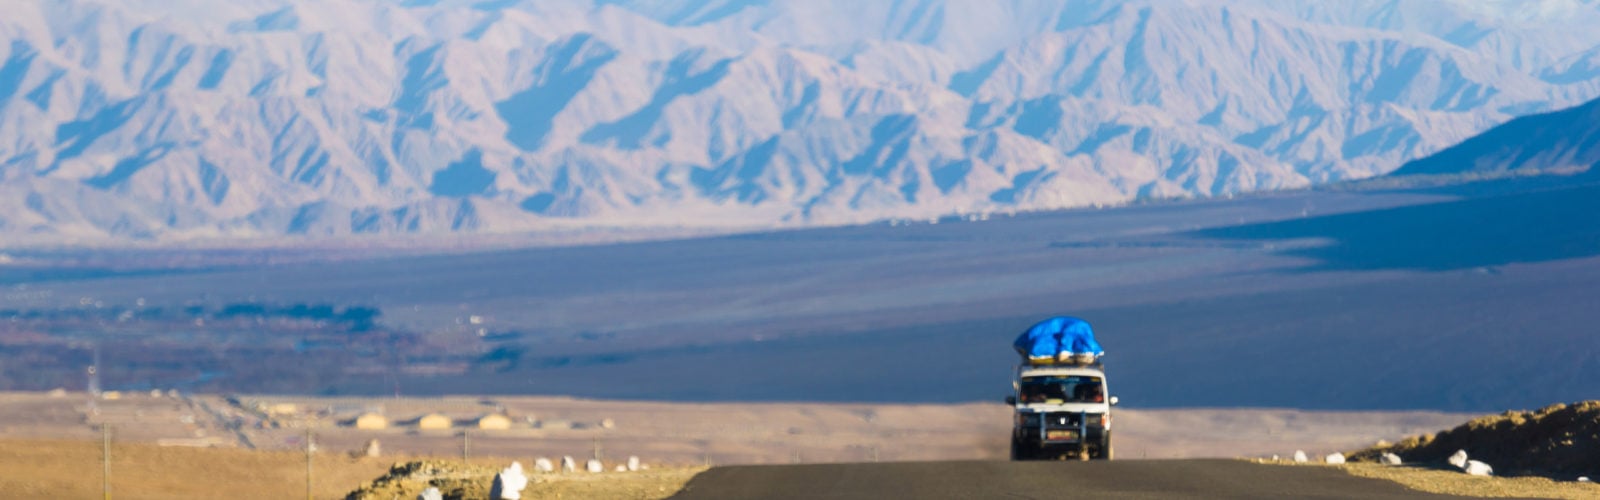 ladakh-landscape-and-car.